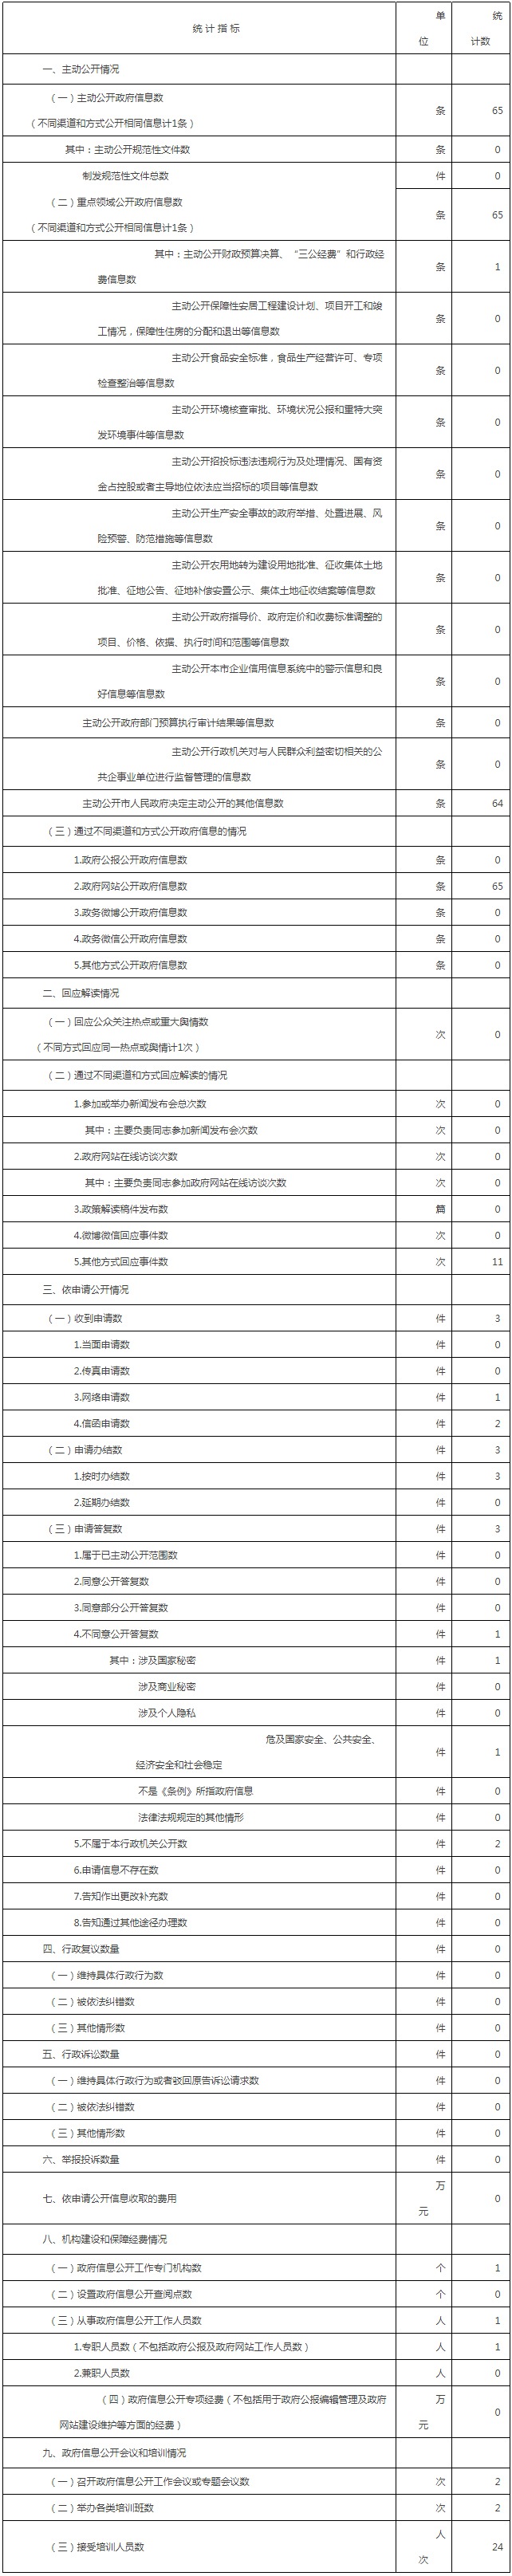 北京市人民政府天安门地区管理委员会政府信息公开情况统计表